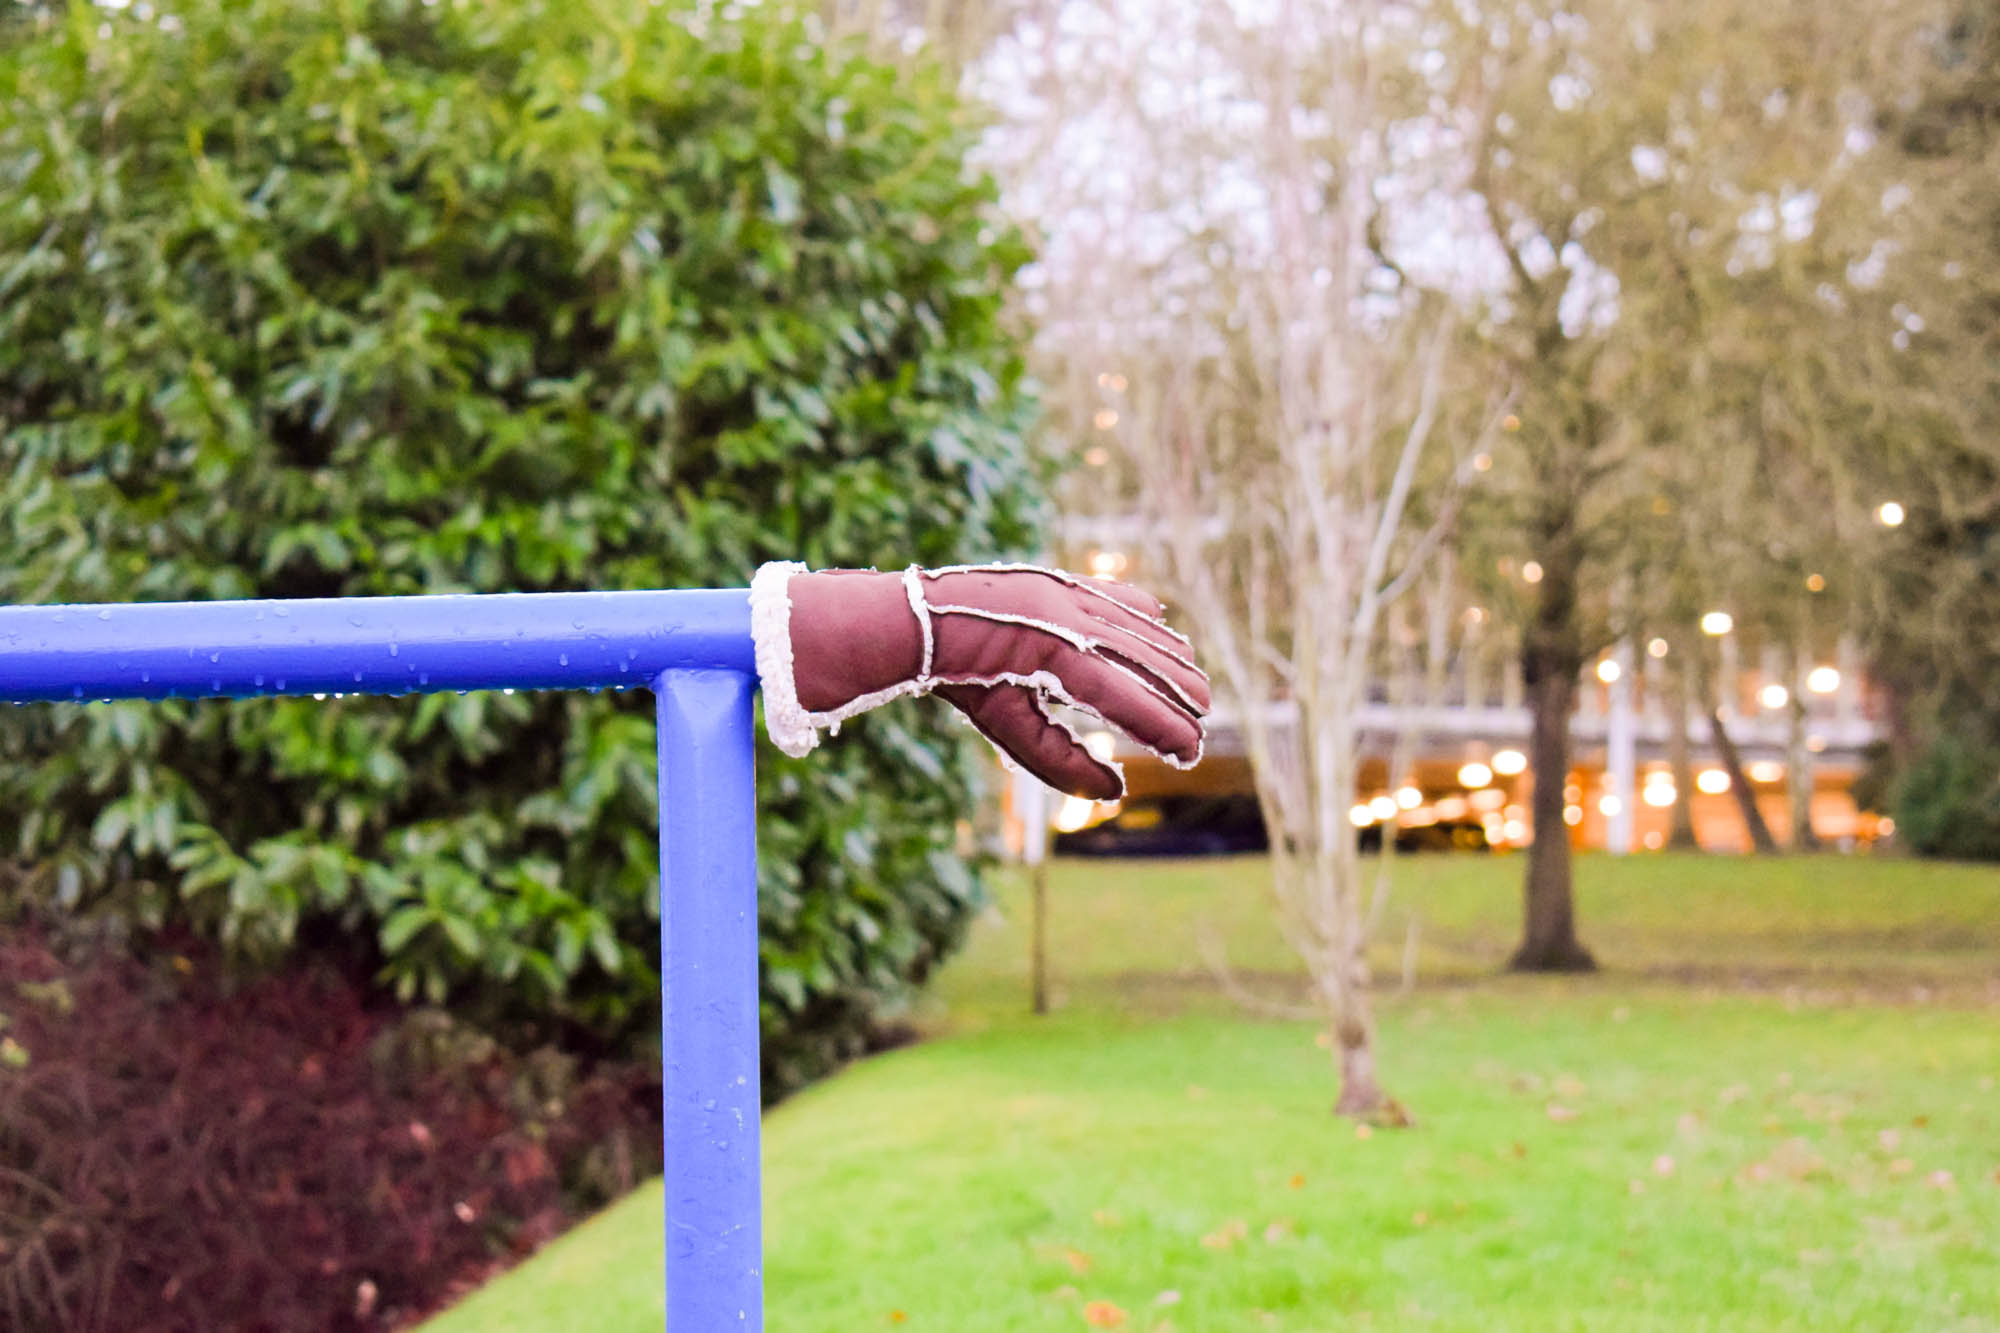 Glove lost on campus